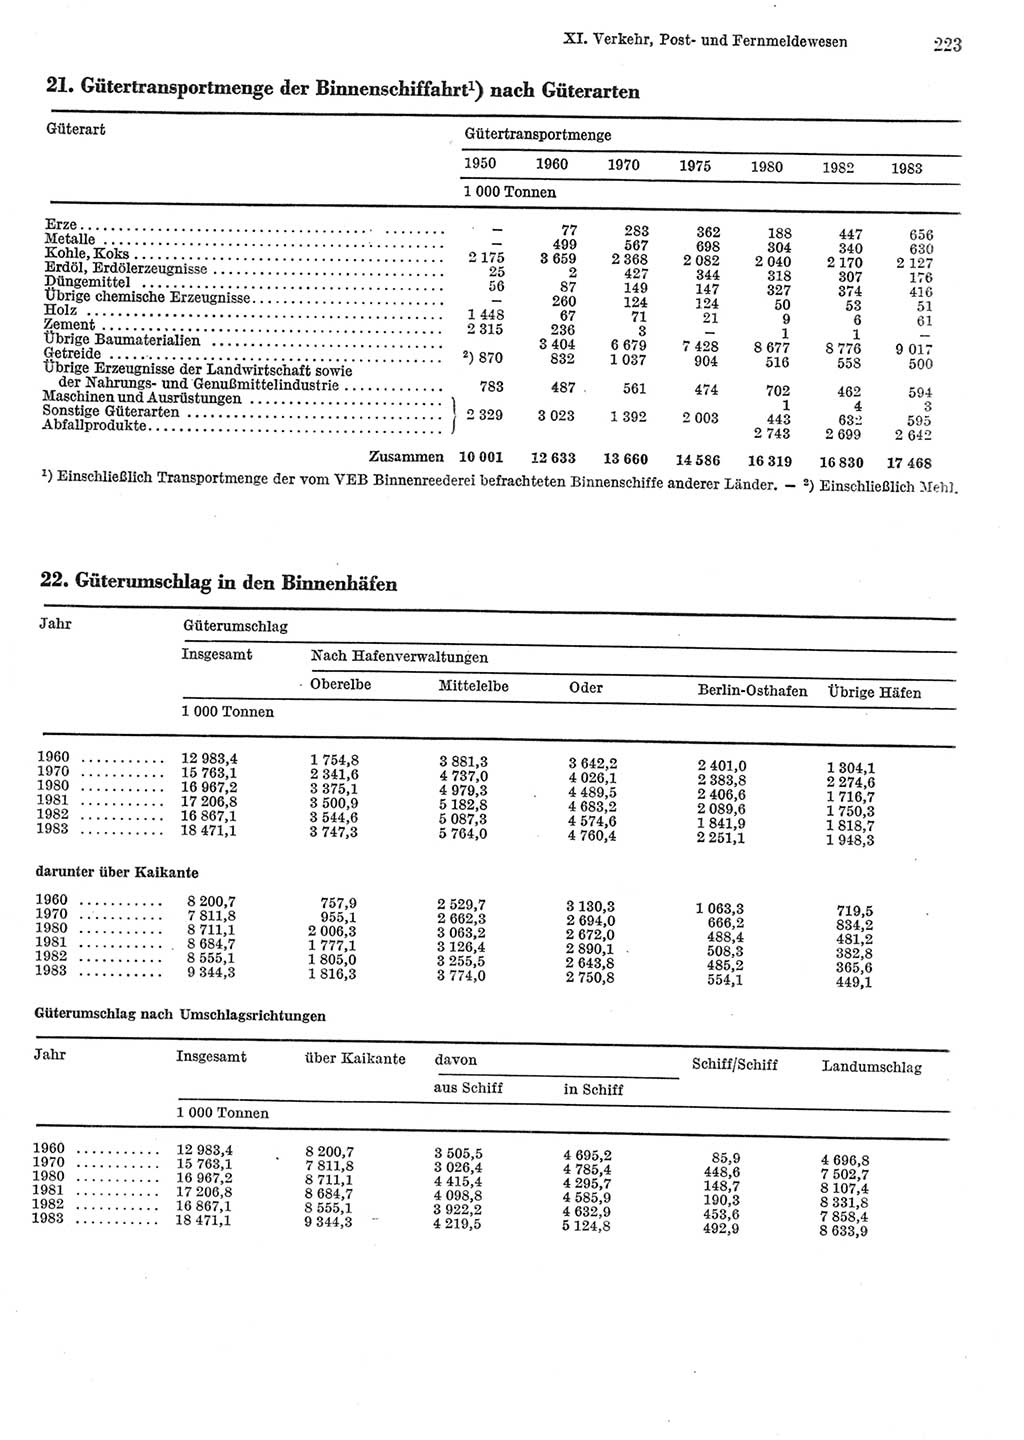 Statistisches Jahrbuch der Deutschen Demokratischen Republik (DDR) 1984, Seite 223 (Stat. Jb. DDR 1984, S. 223)